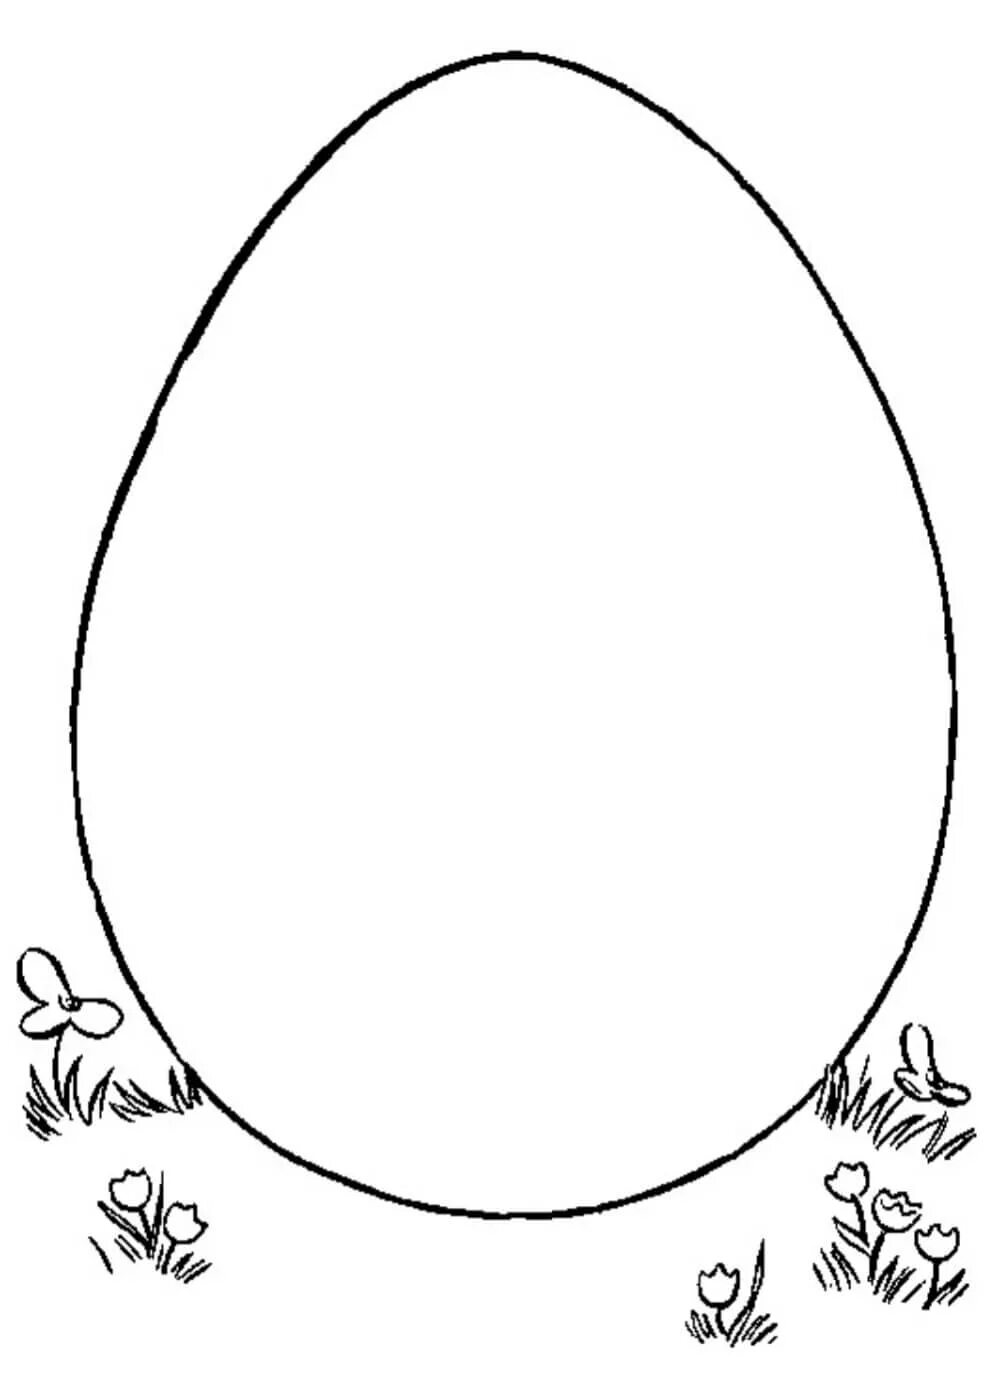 Яйцо раскраска. Яйцо раскраска для детей. Пасхальное яйцо раскраска для детей. Яйца для раскрашивания детям. Шаблон пасхального яйца для вырезания